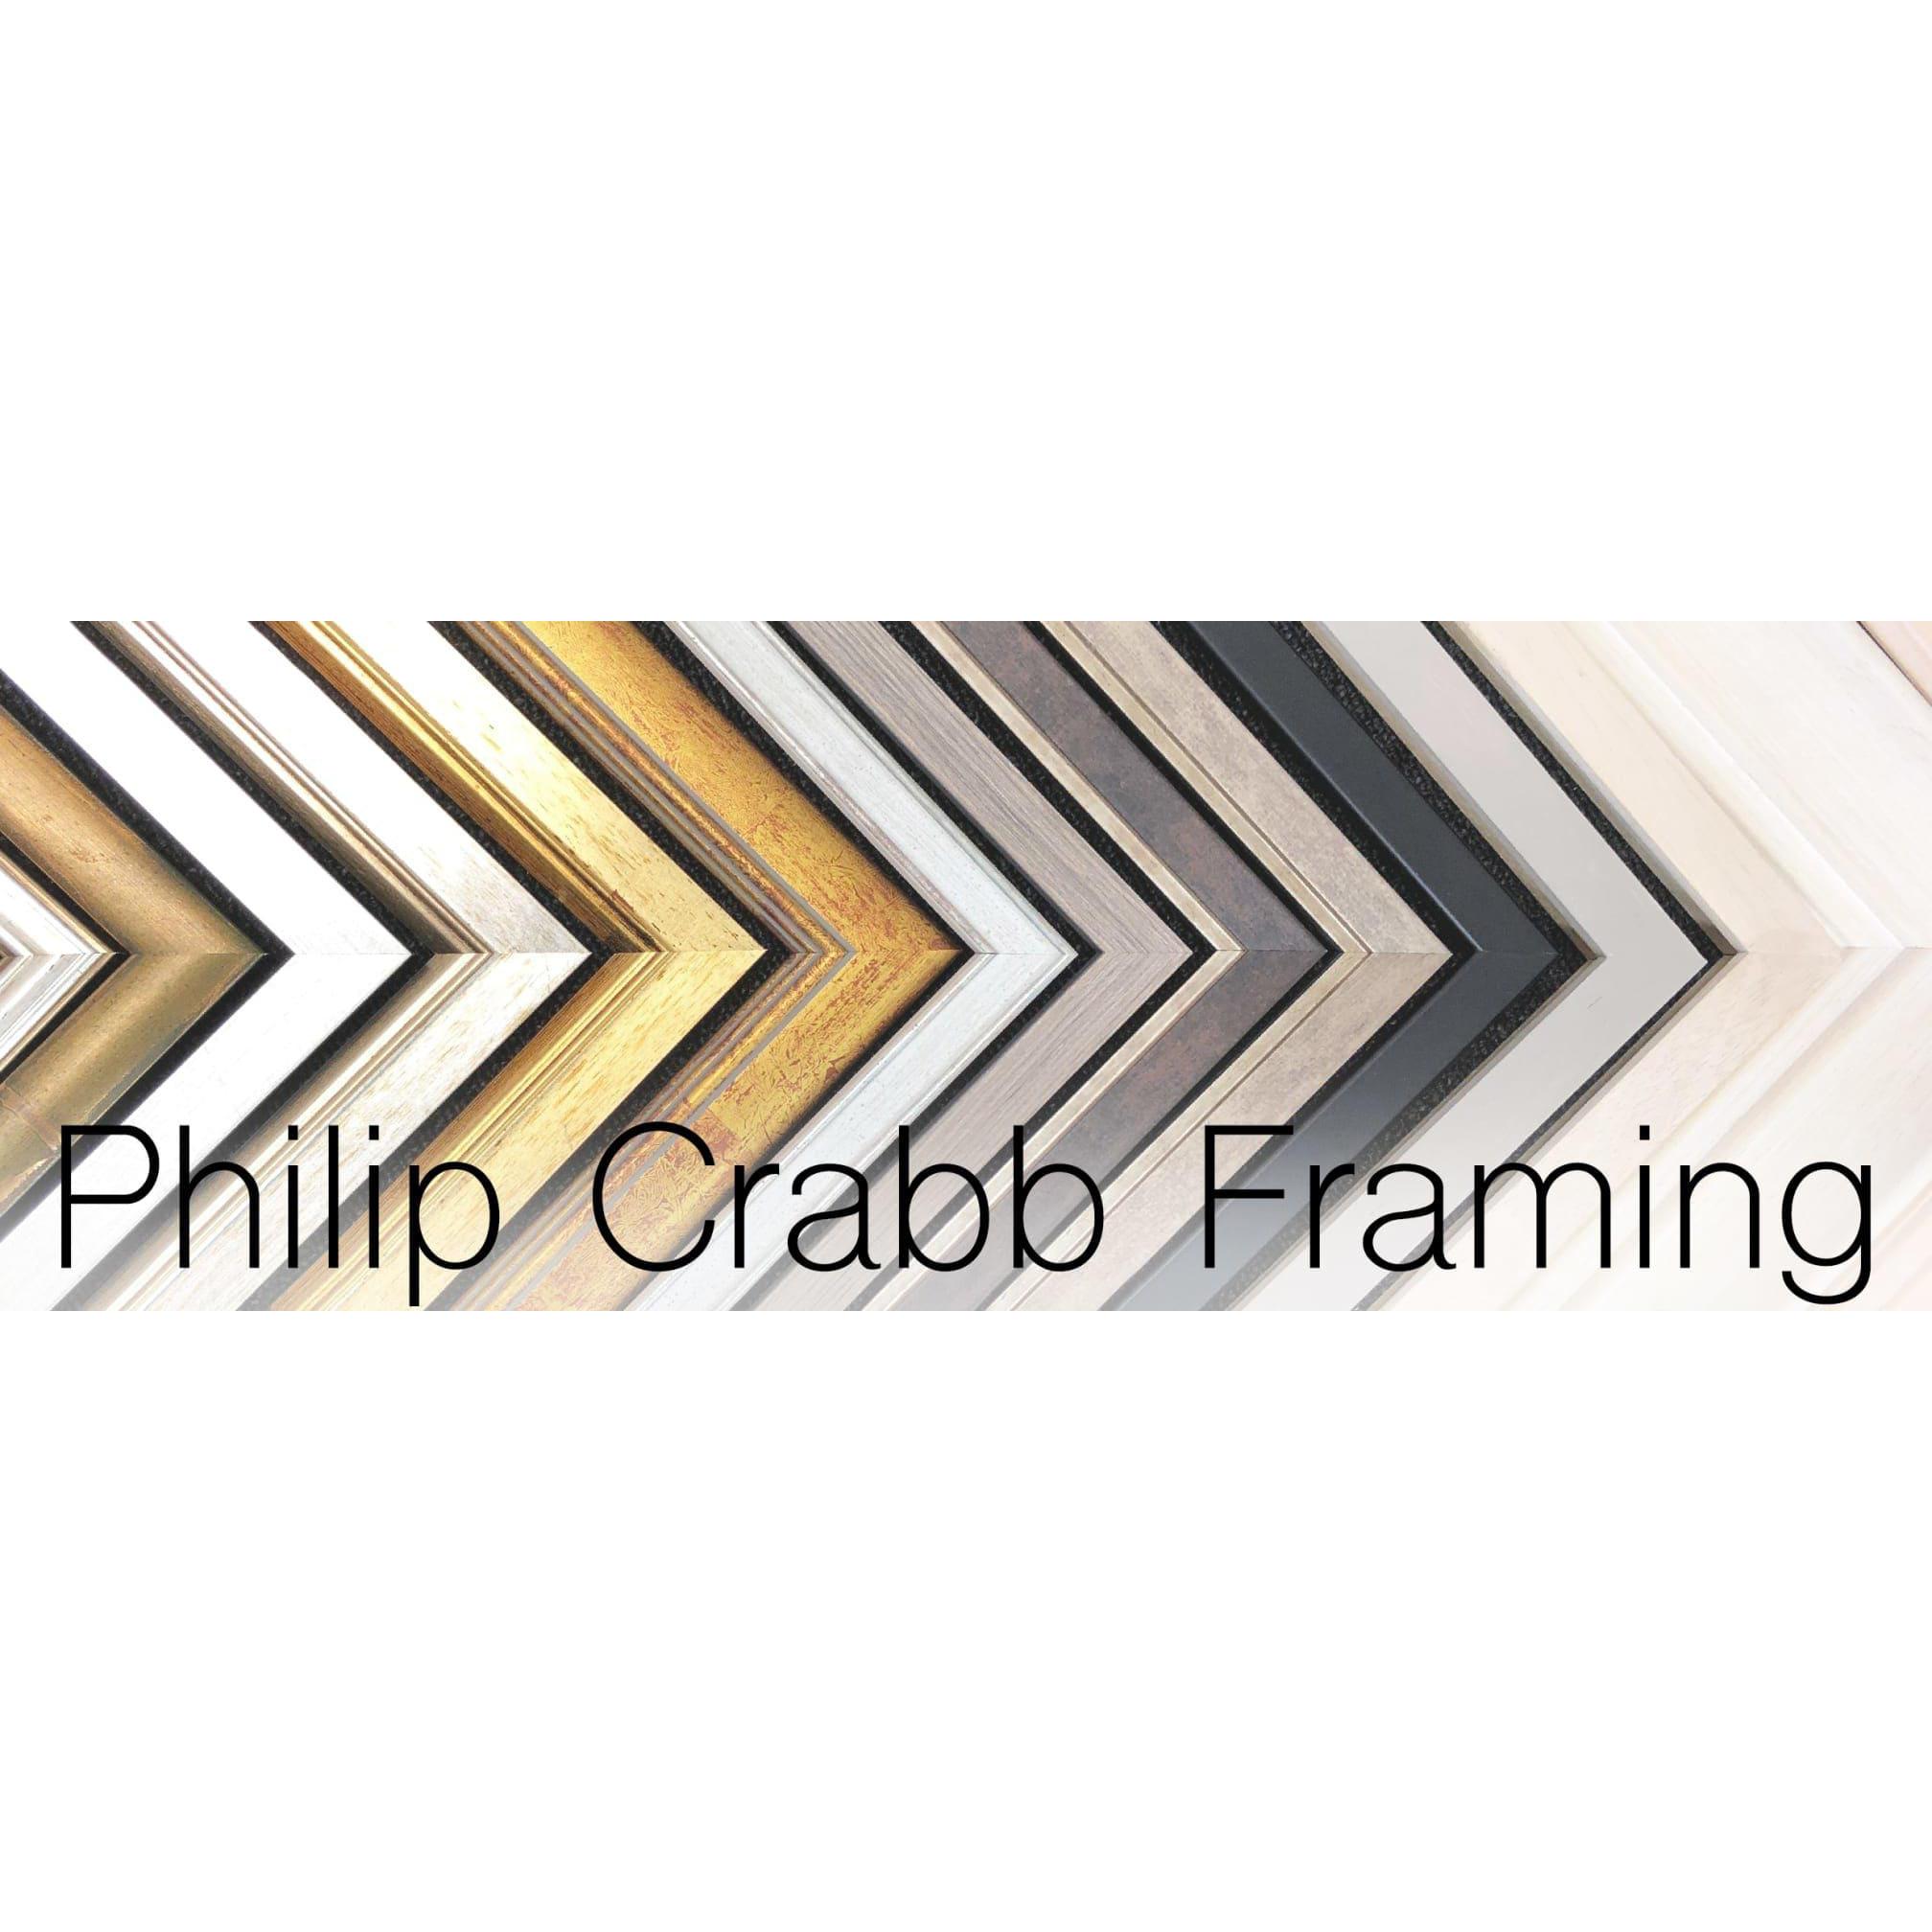 Philip Crabb Framing Logo